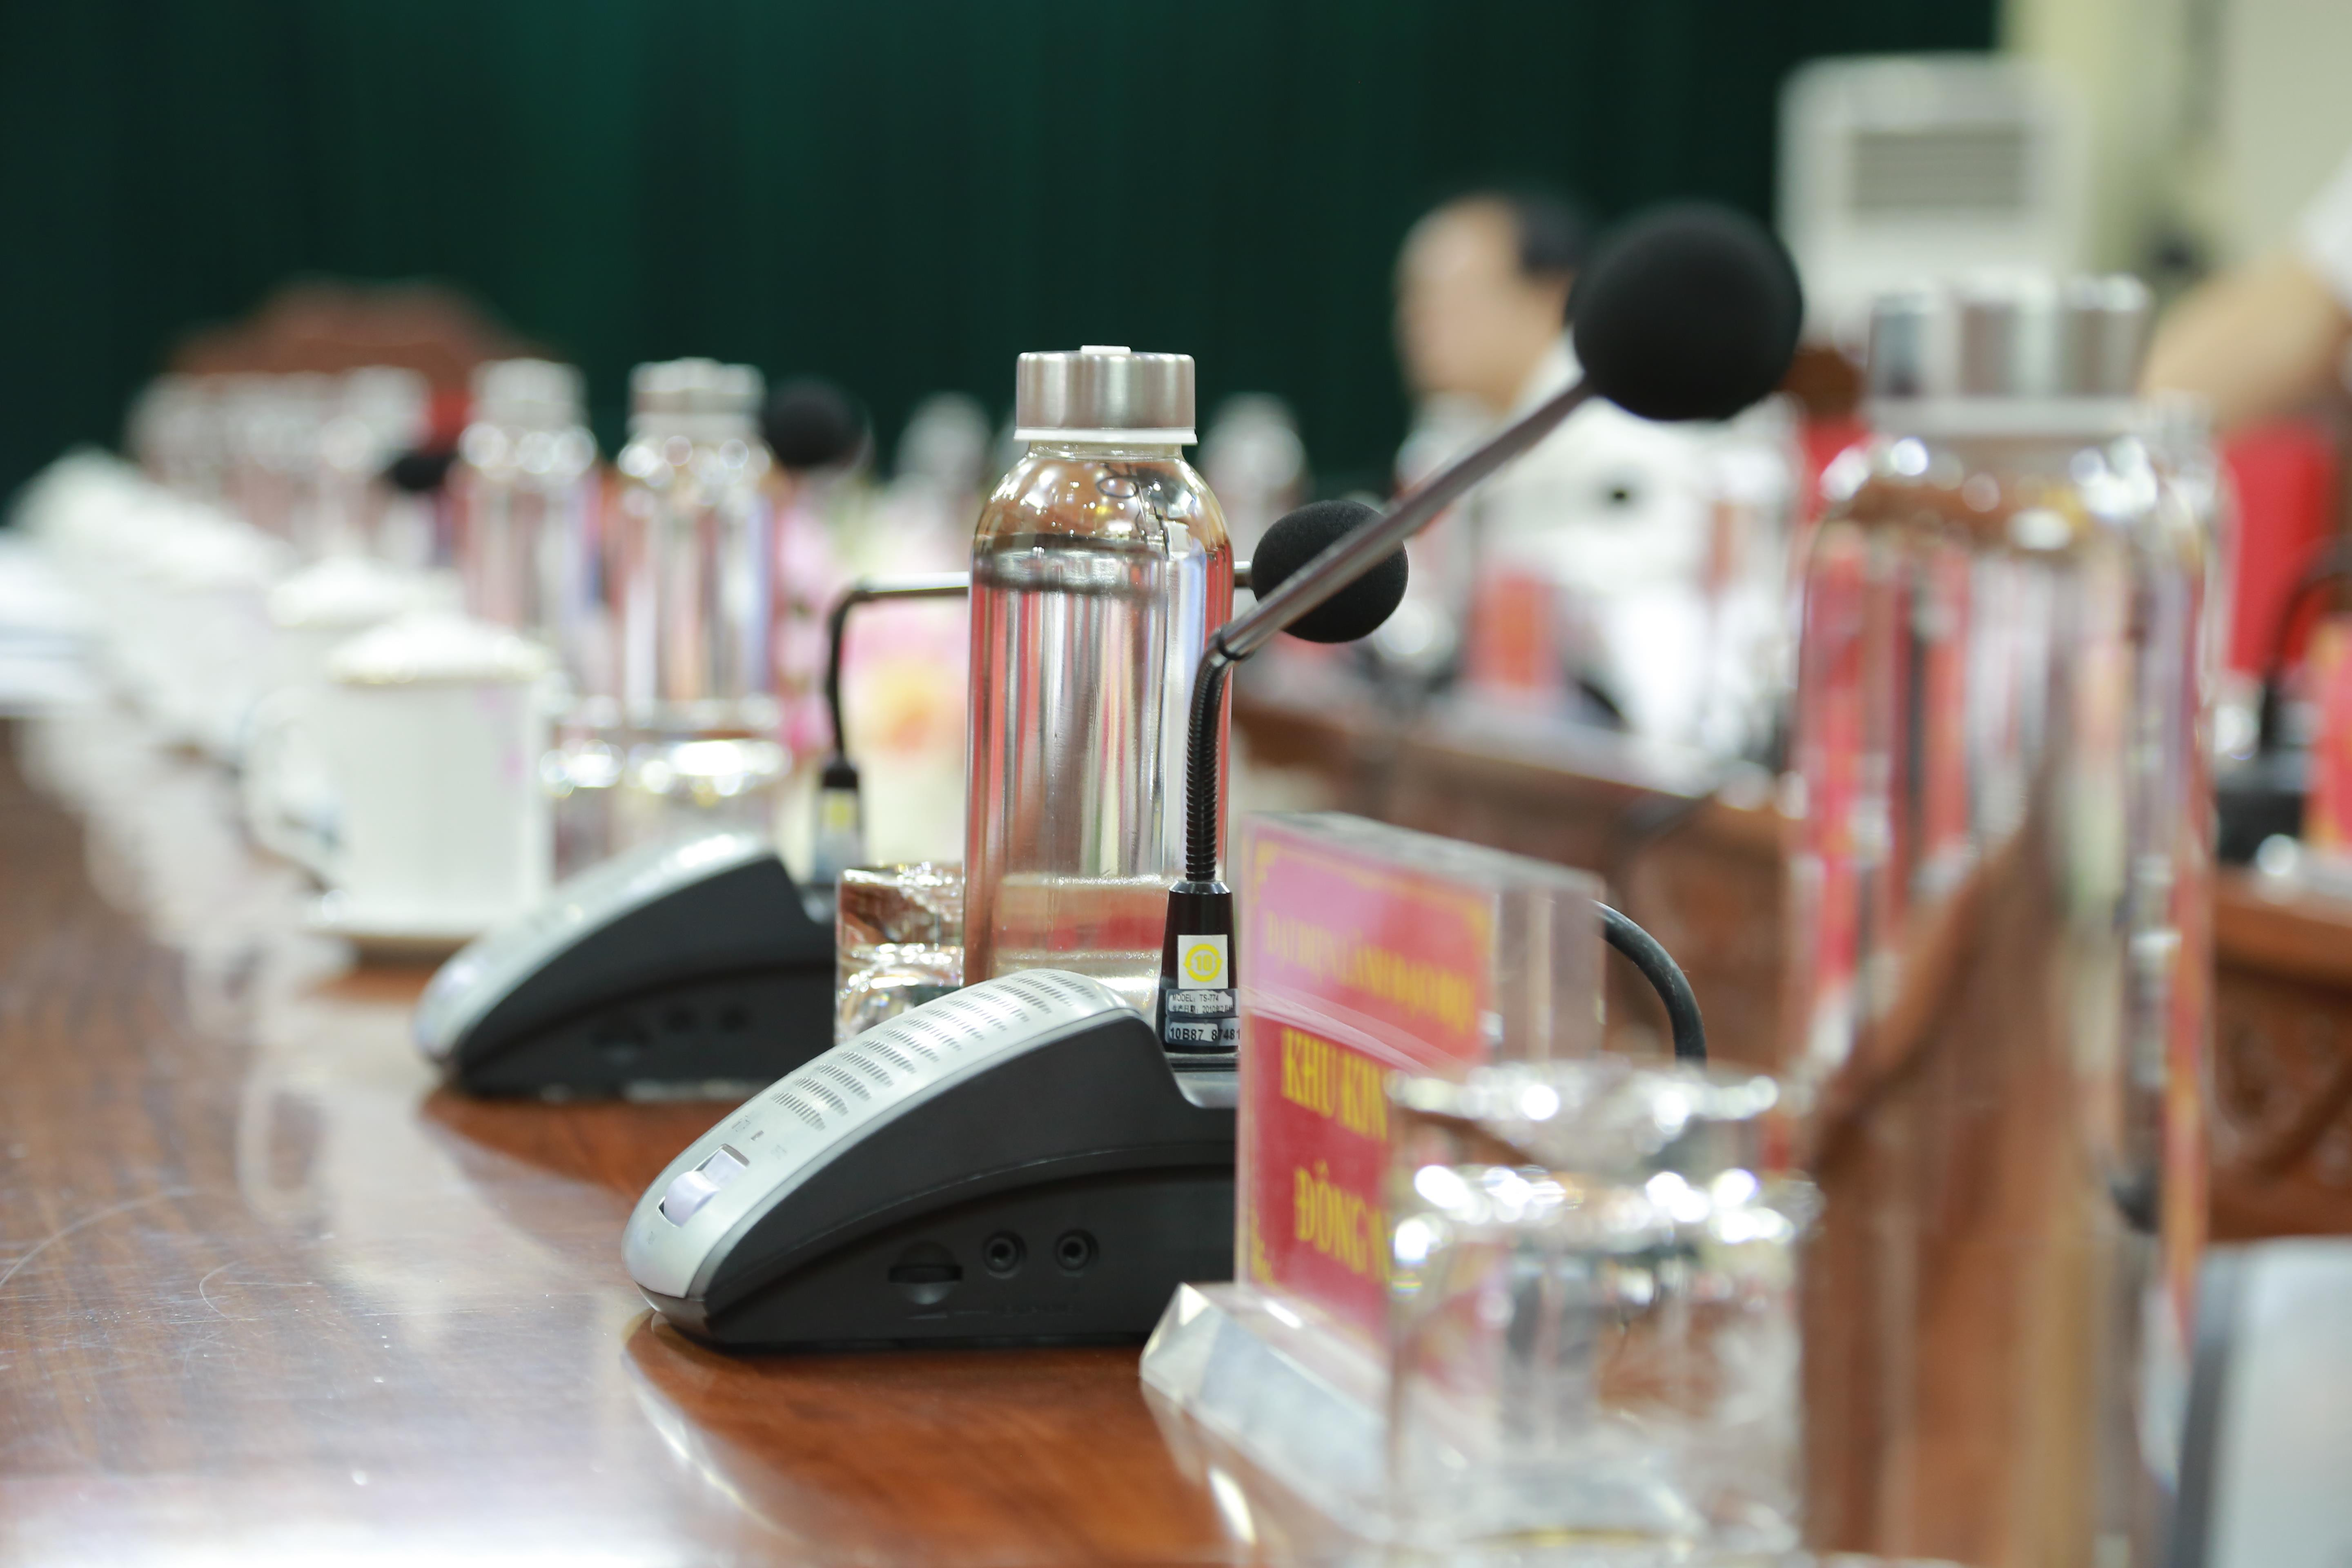 Văn phòng Tỉnh ủy Nghệ An đã trang bị đồng loạt chai đựng nước bằng thủy tinh thay cho chai nhựa. Ảnh: Quốc Sơn